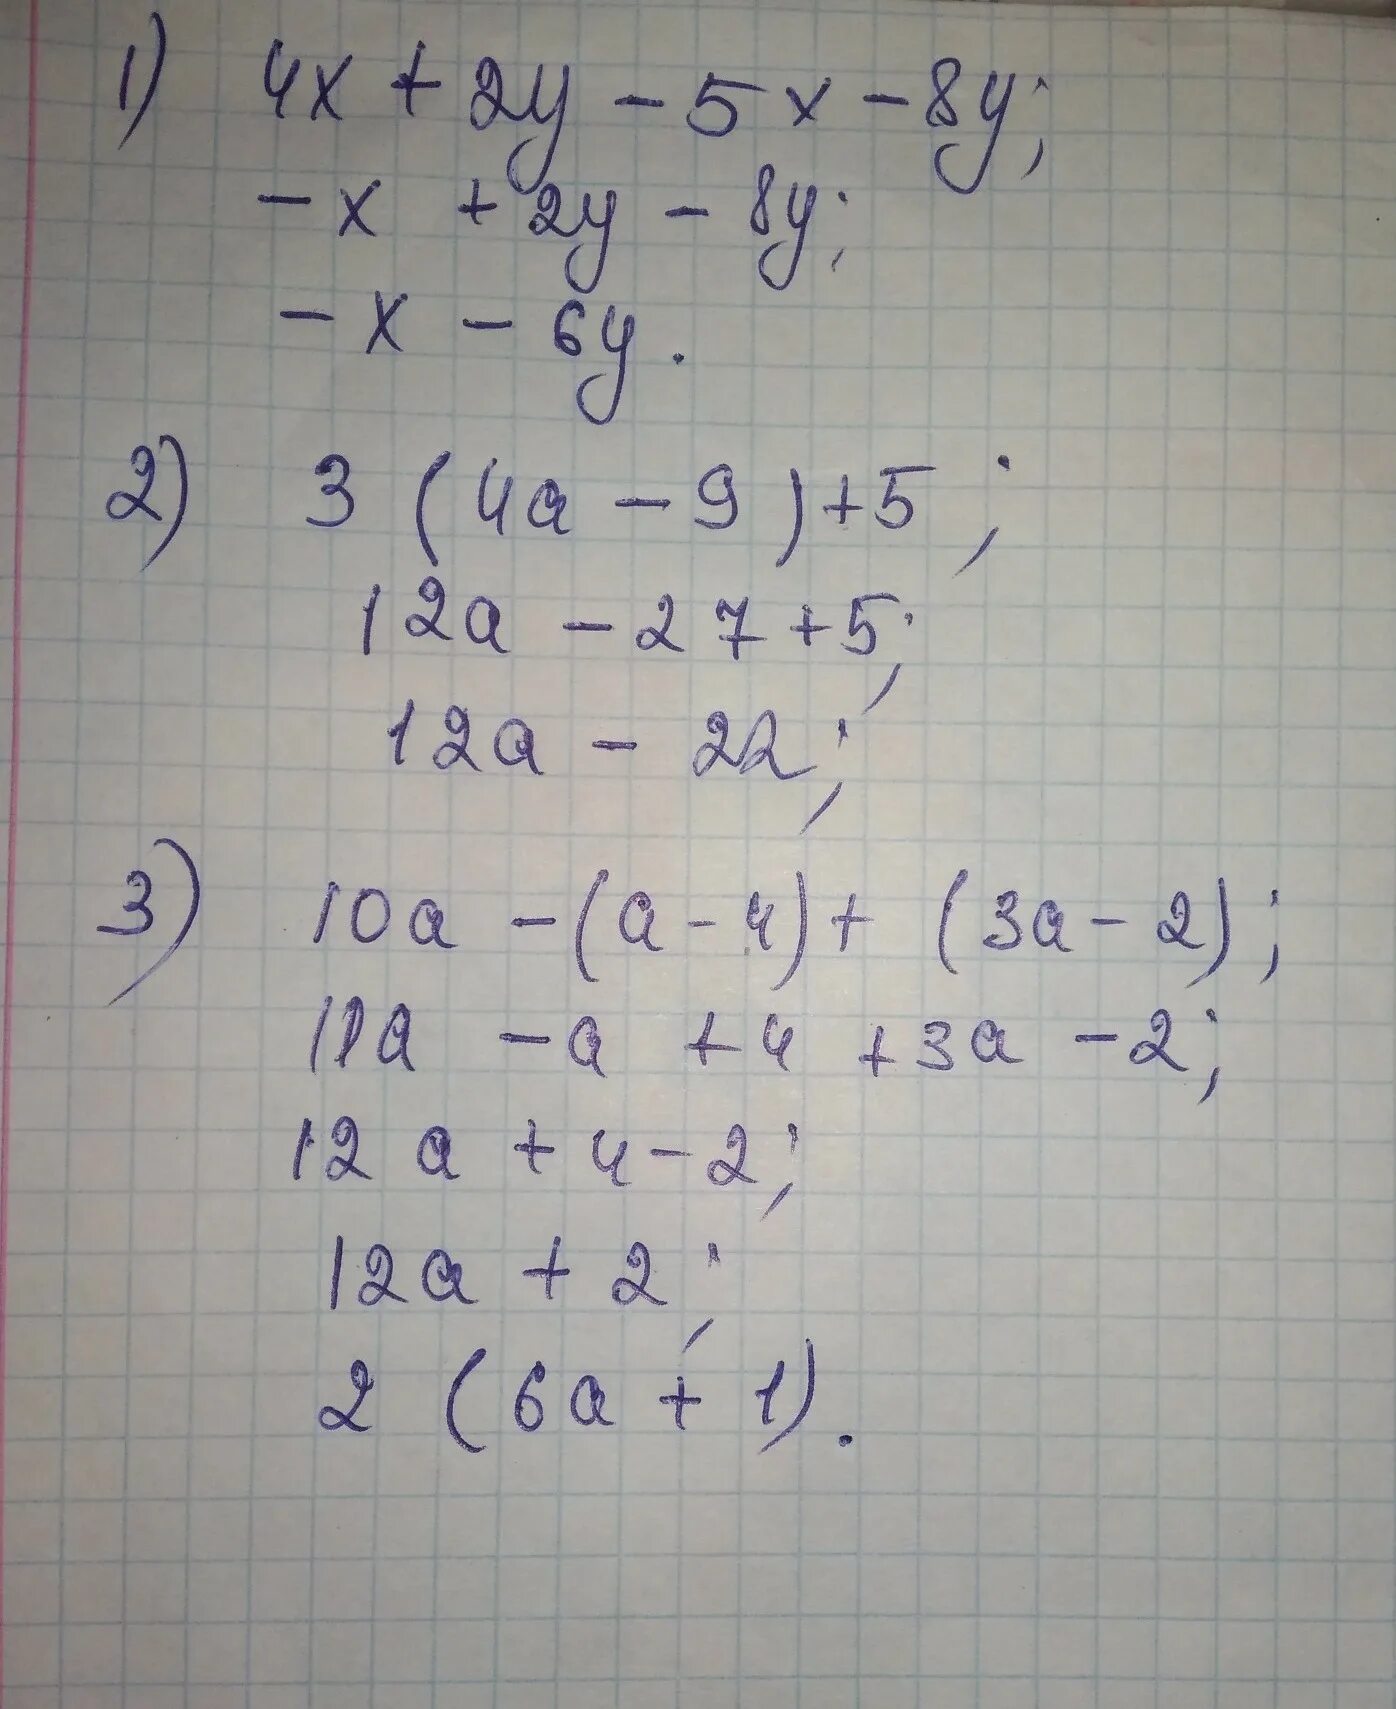 У 3х 2 4х 5. X - 8/5x=4 1/5. (2a+3)(2a-3). 5х у 4 2х+у 5. (2,5- Х)(2х +3)(х +4) > 0.